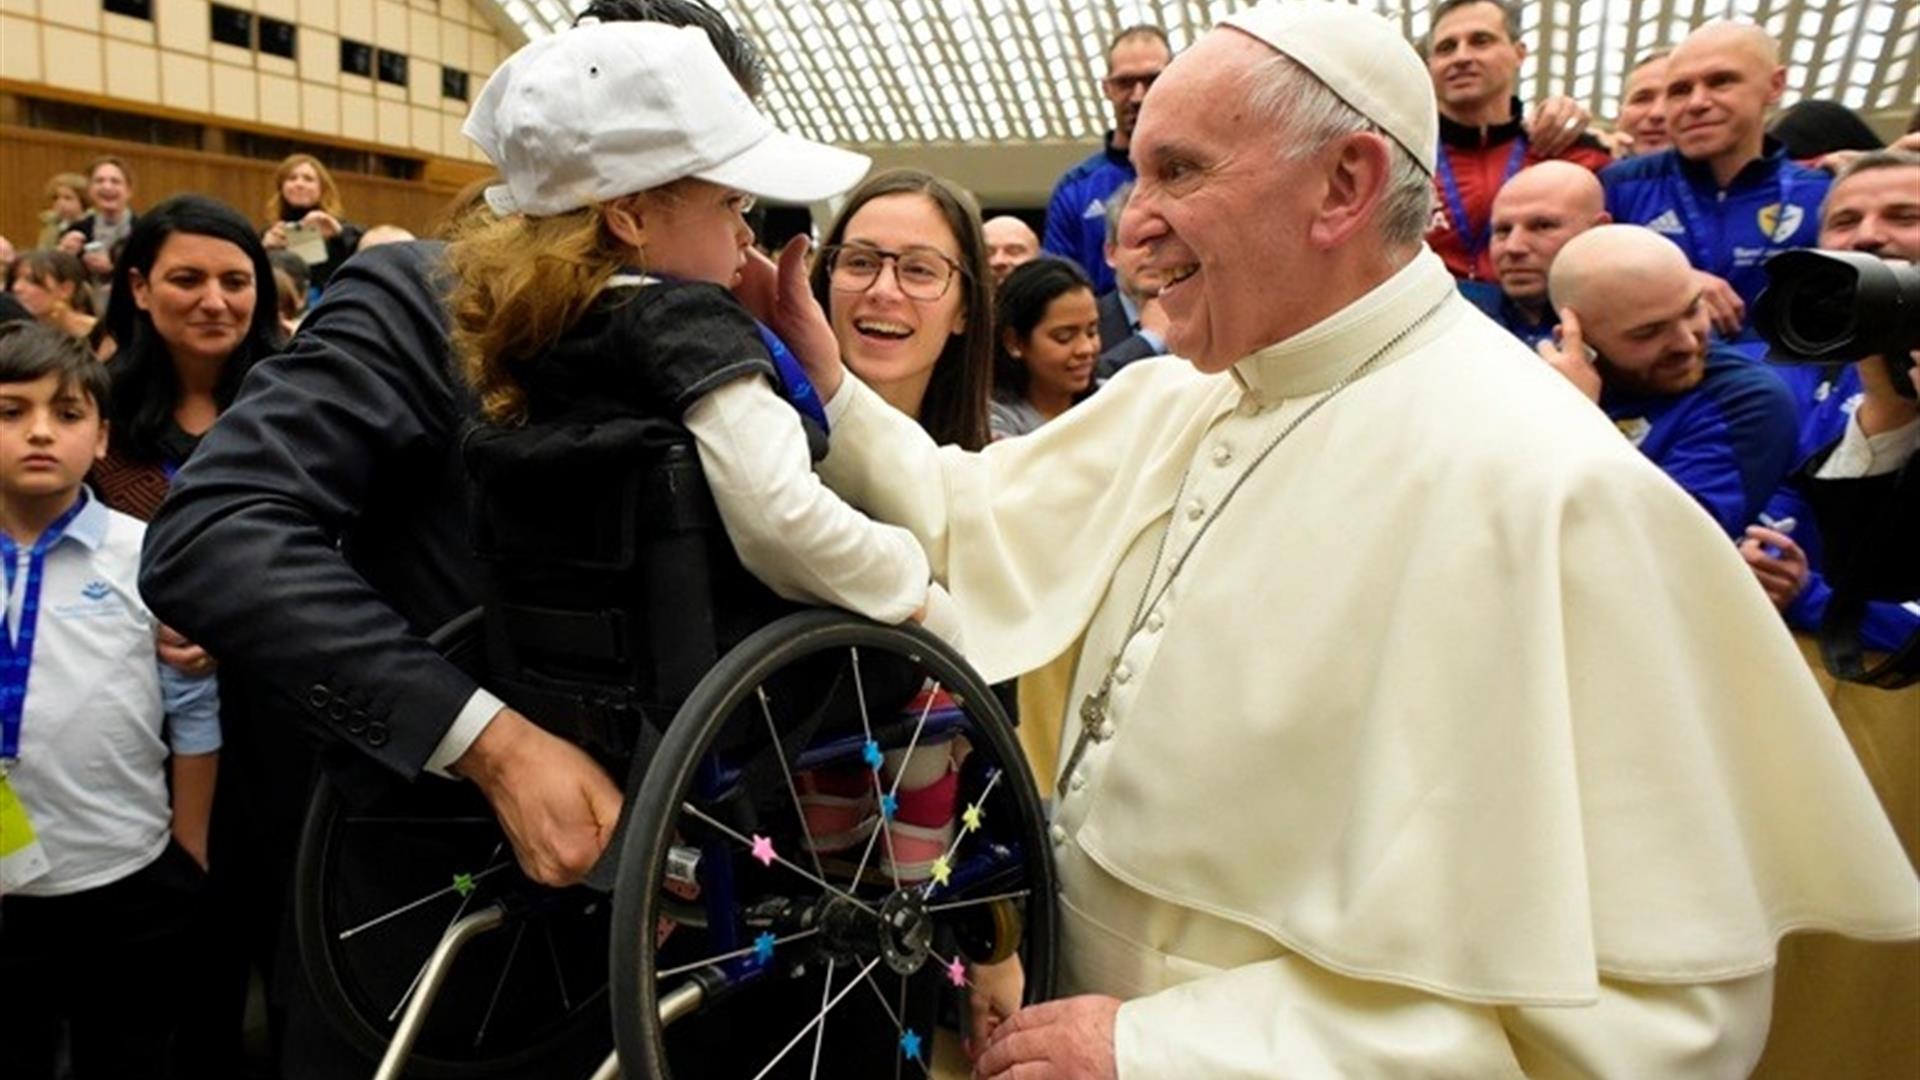 Incontri inter religiosi proposti dai pap